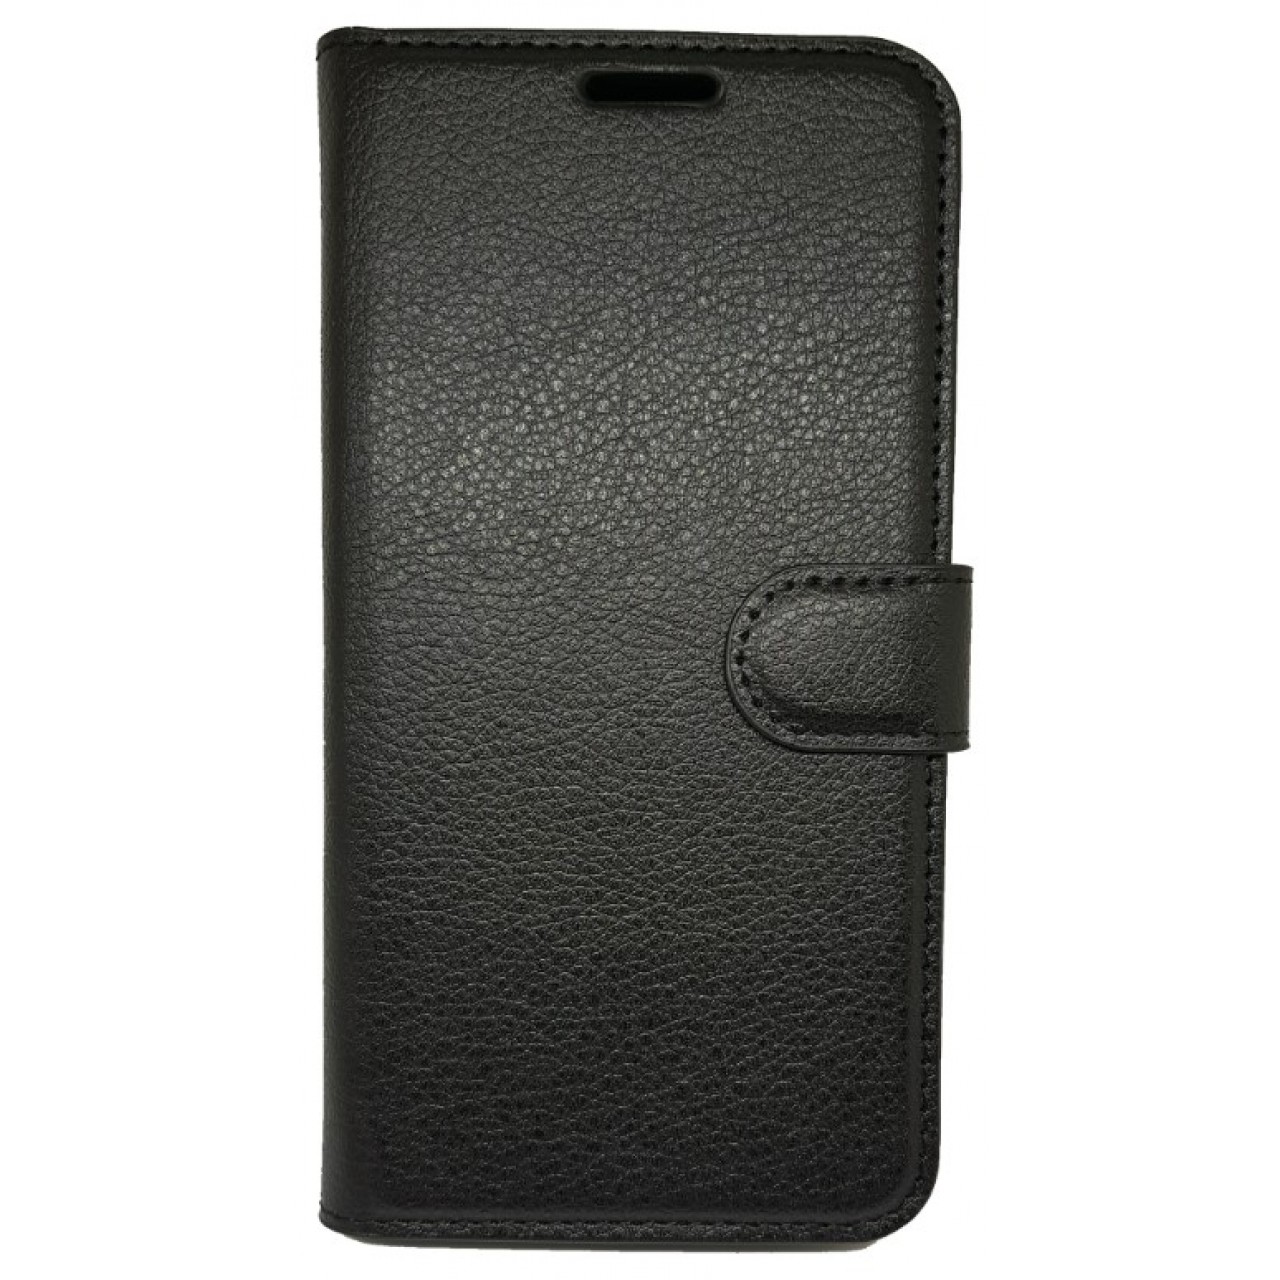 Θήκη Nokia 5 PU Leather Πορτοφόλι flip - 3320 - Μαύρο - OEM